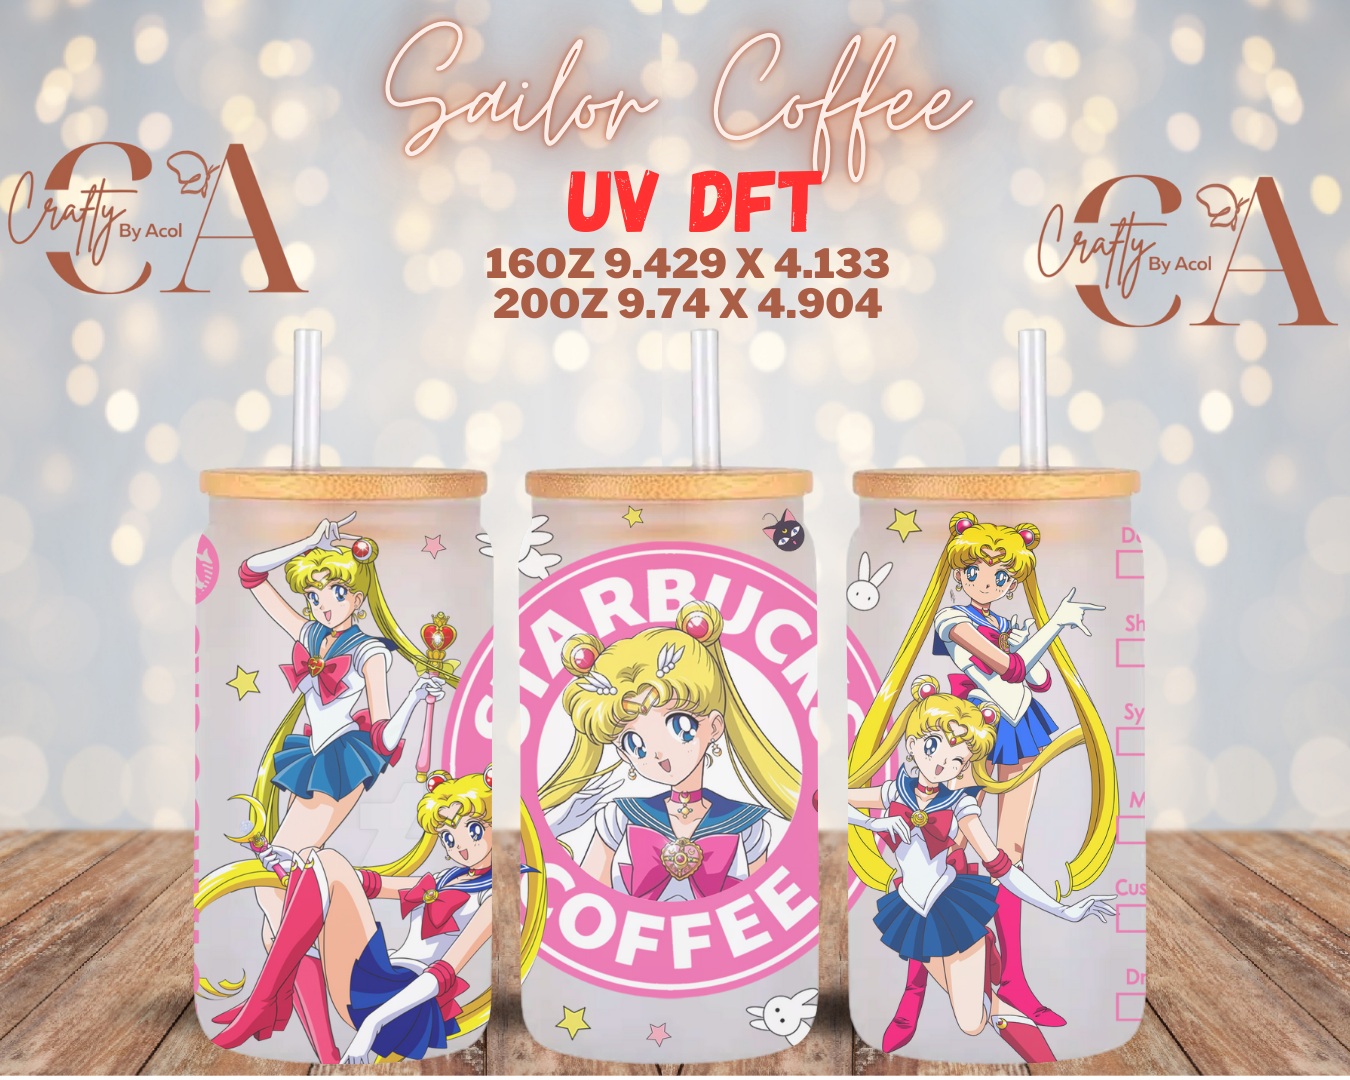 Sailor Coffee UV DFT Cup Wrap